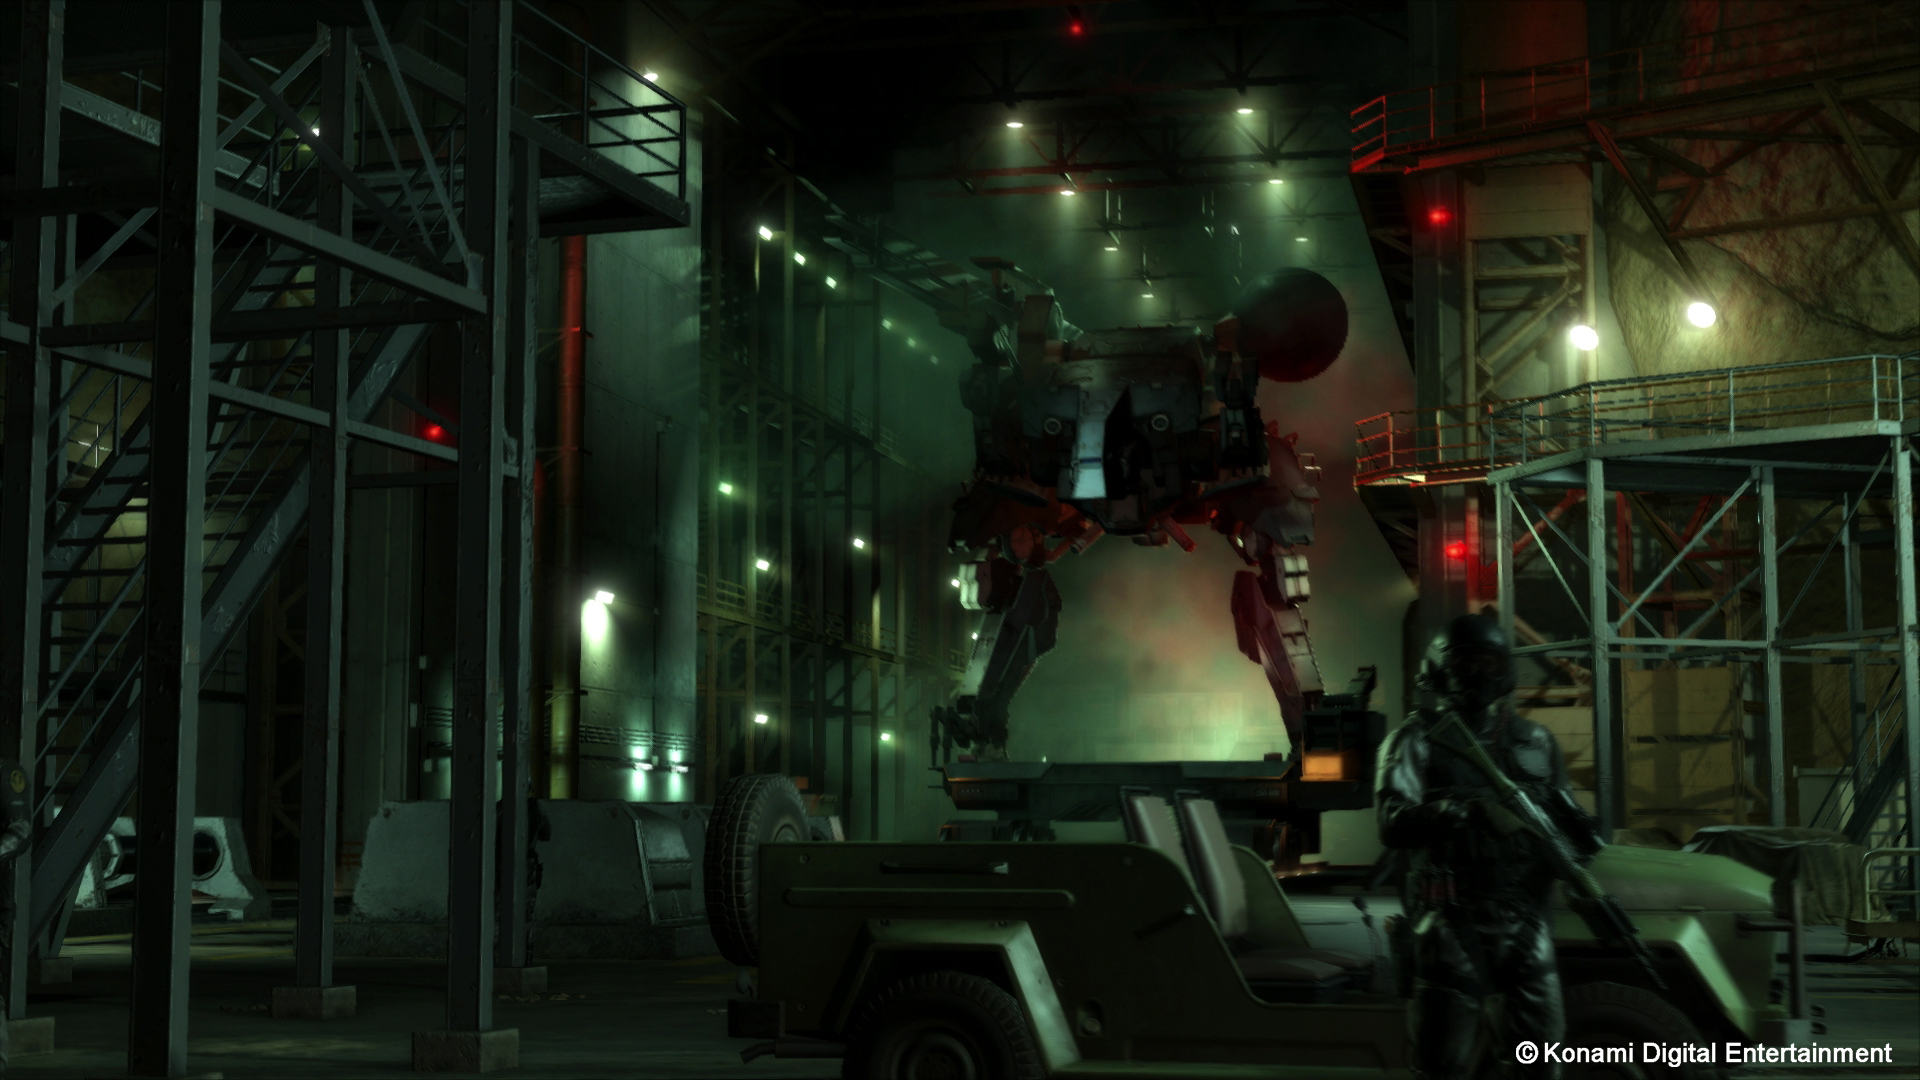 Скачать обои бесплатно Видеоигры, Метал Гир Твердый, Metal Gear Solid V: Призрачная Боль картинка на рабочий стол ПК